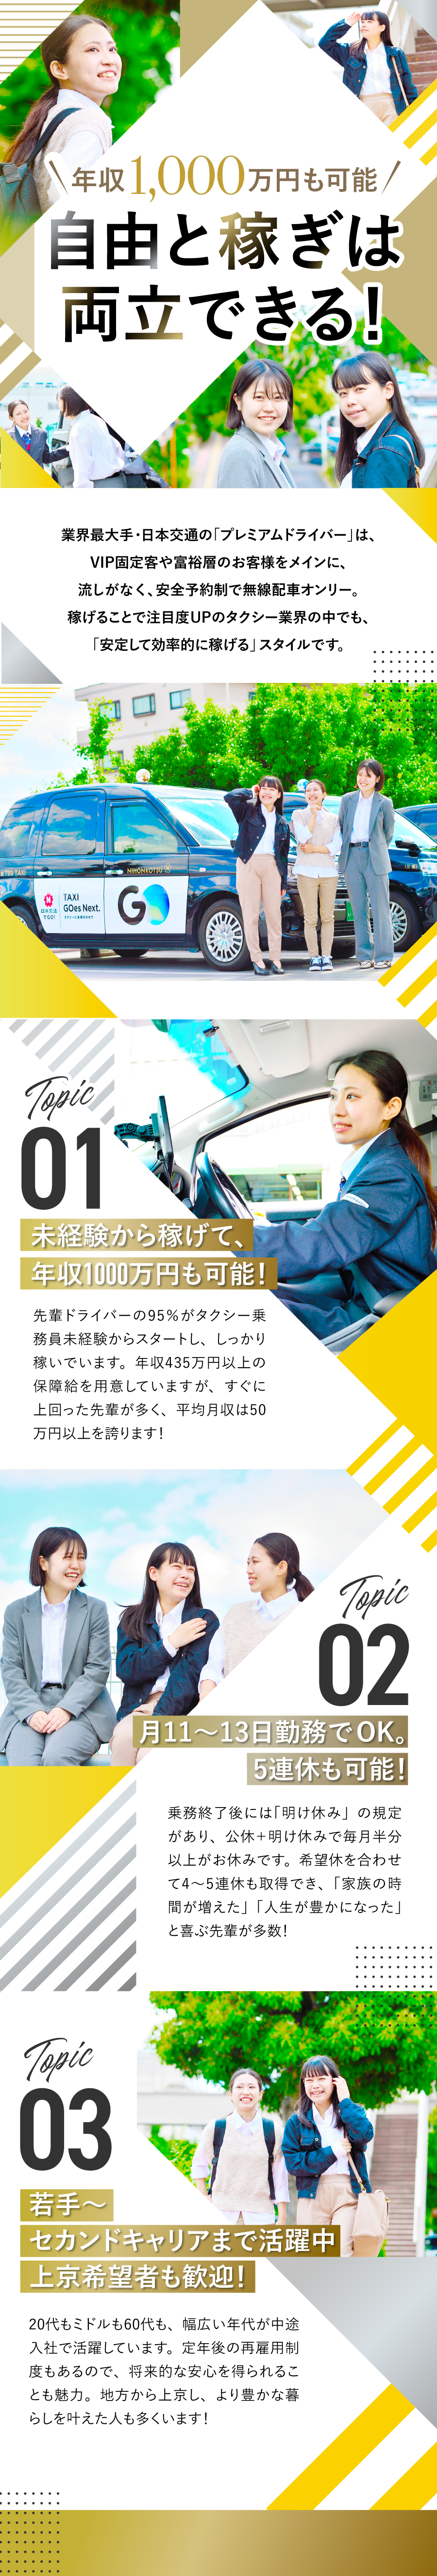 日本交通株式会社からのメッセージ